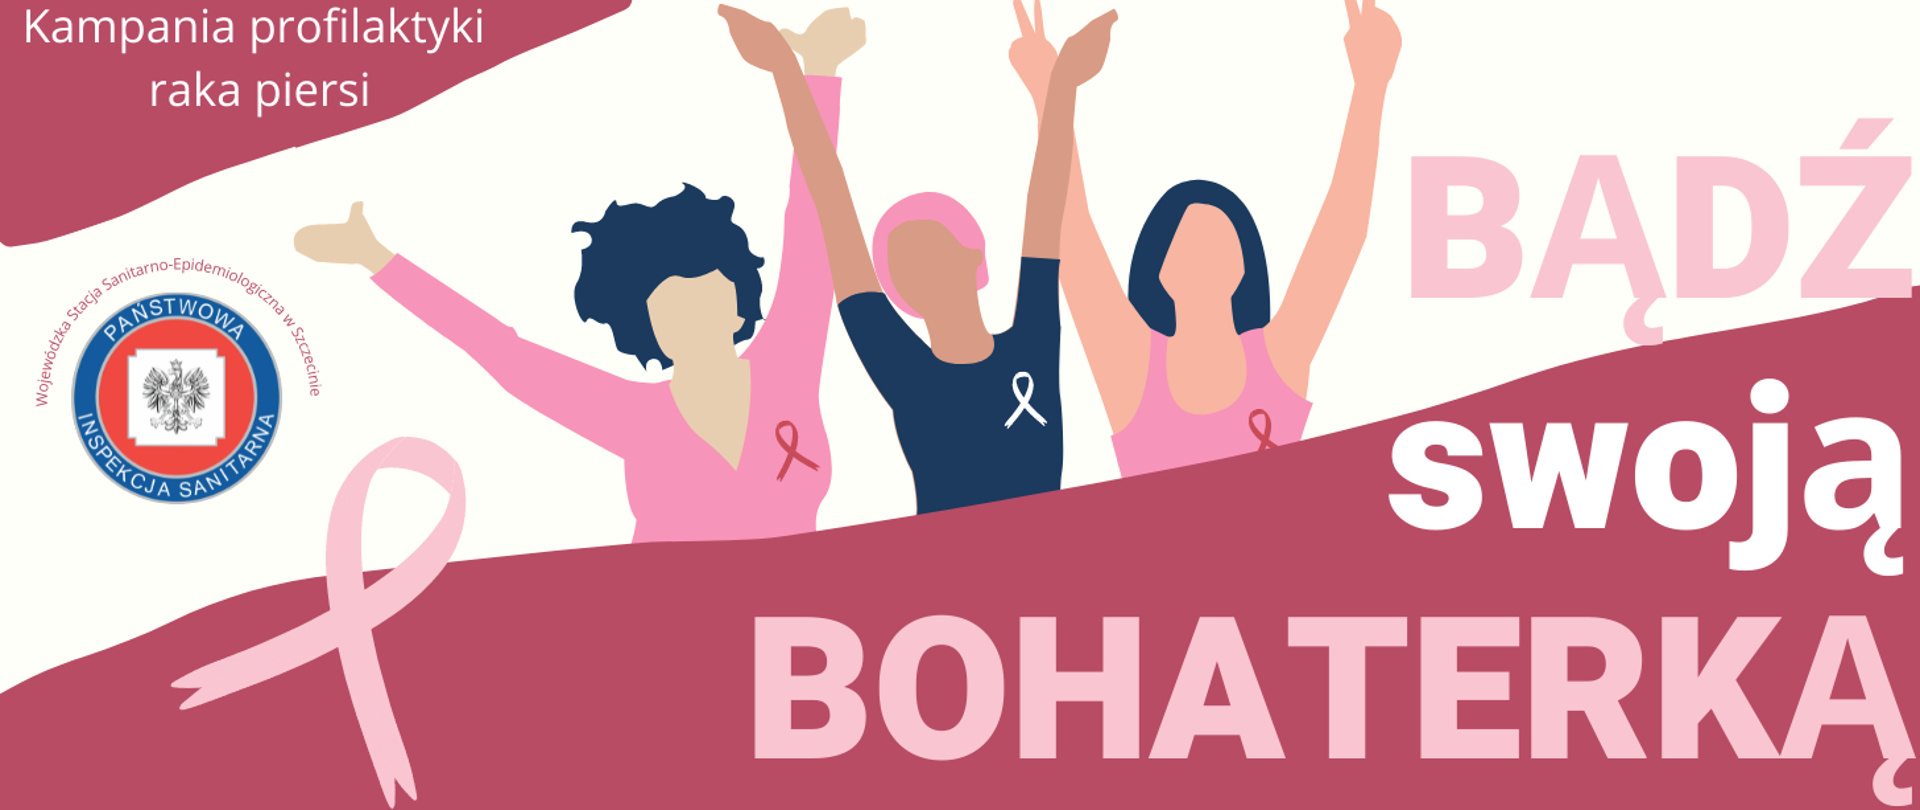 Grafika przedstawia hasło akcji, postacie trzech kobiet z uniesionymi rękami, symbole różowej wstążeczki.